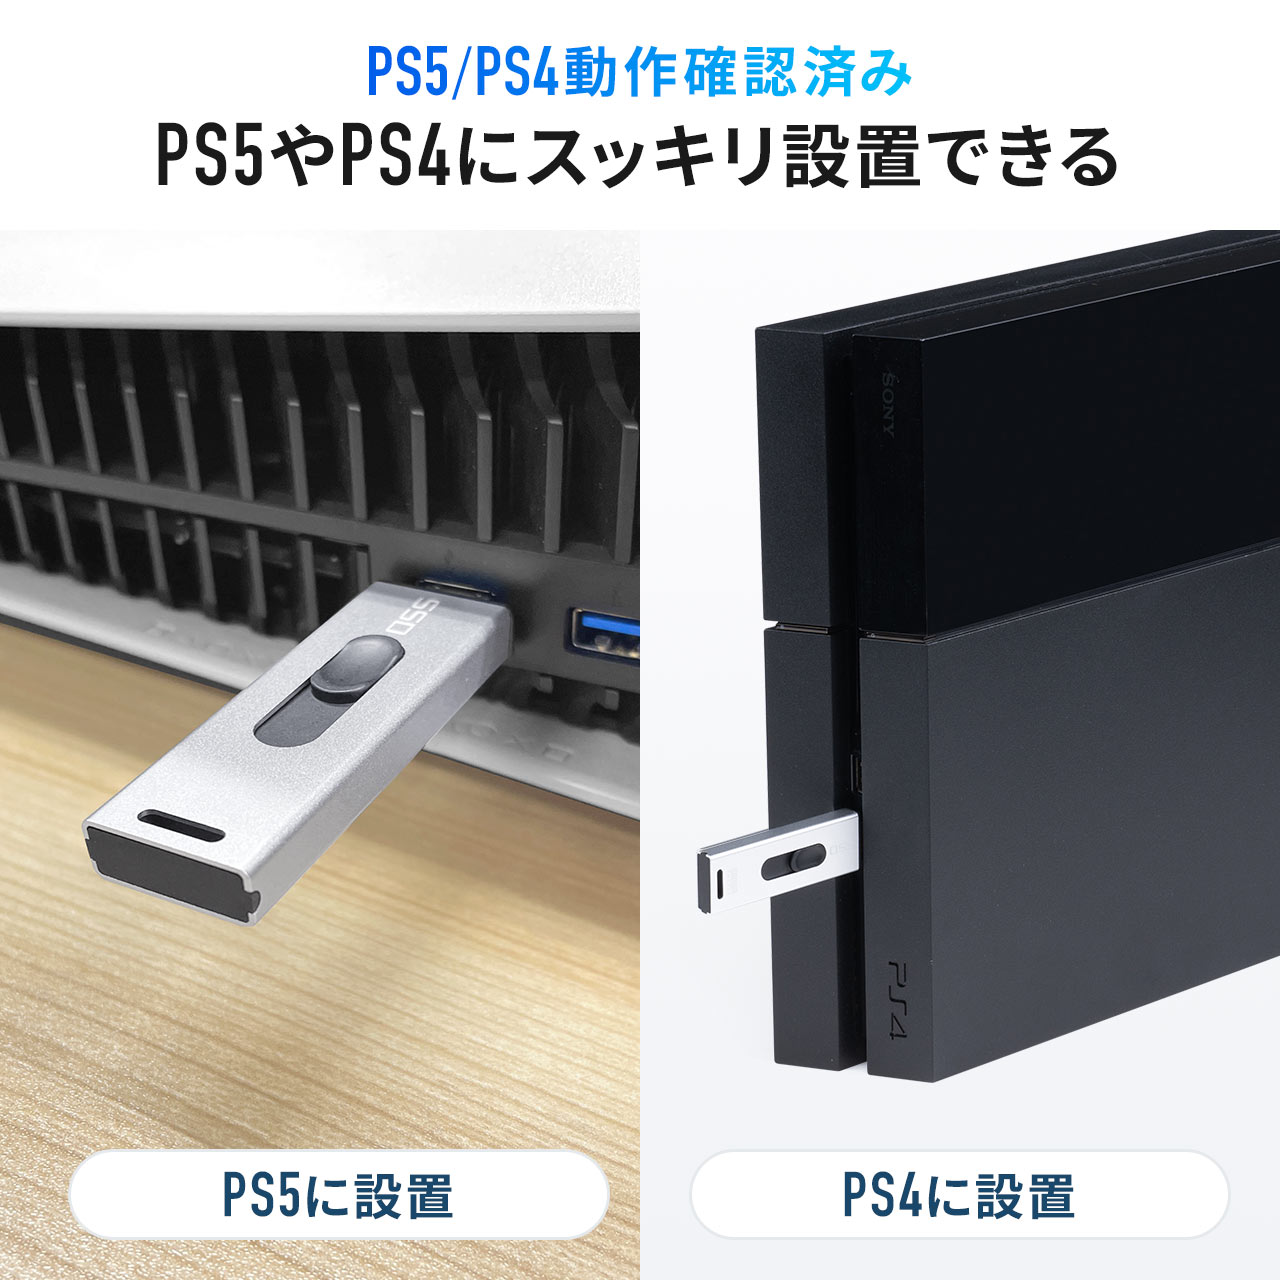 スティック型SSD 1TB 外付け ポータブルSSD テレビ録画 TV録画用 超小型 USB3.2(Gen2) ゲーム機 PS5 PS4 スライド式 直挿し 高速 データ転送 600-USSD1TBS